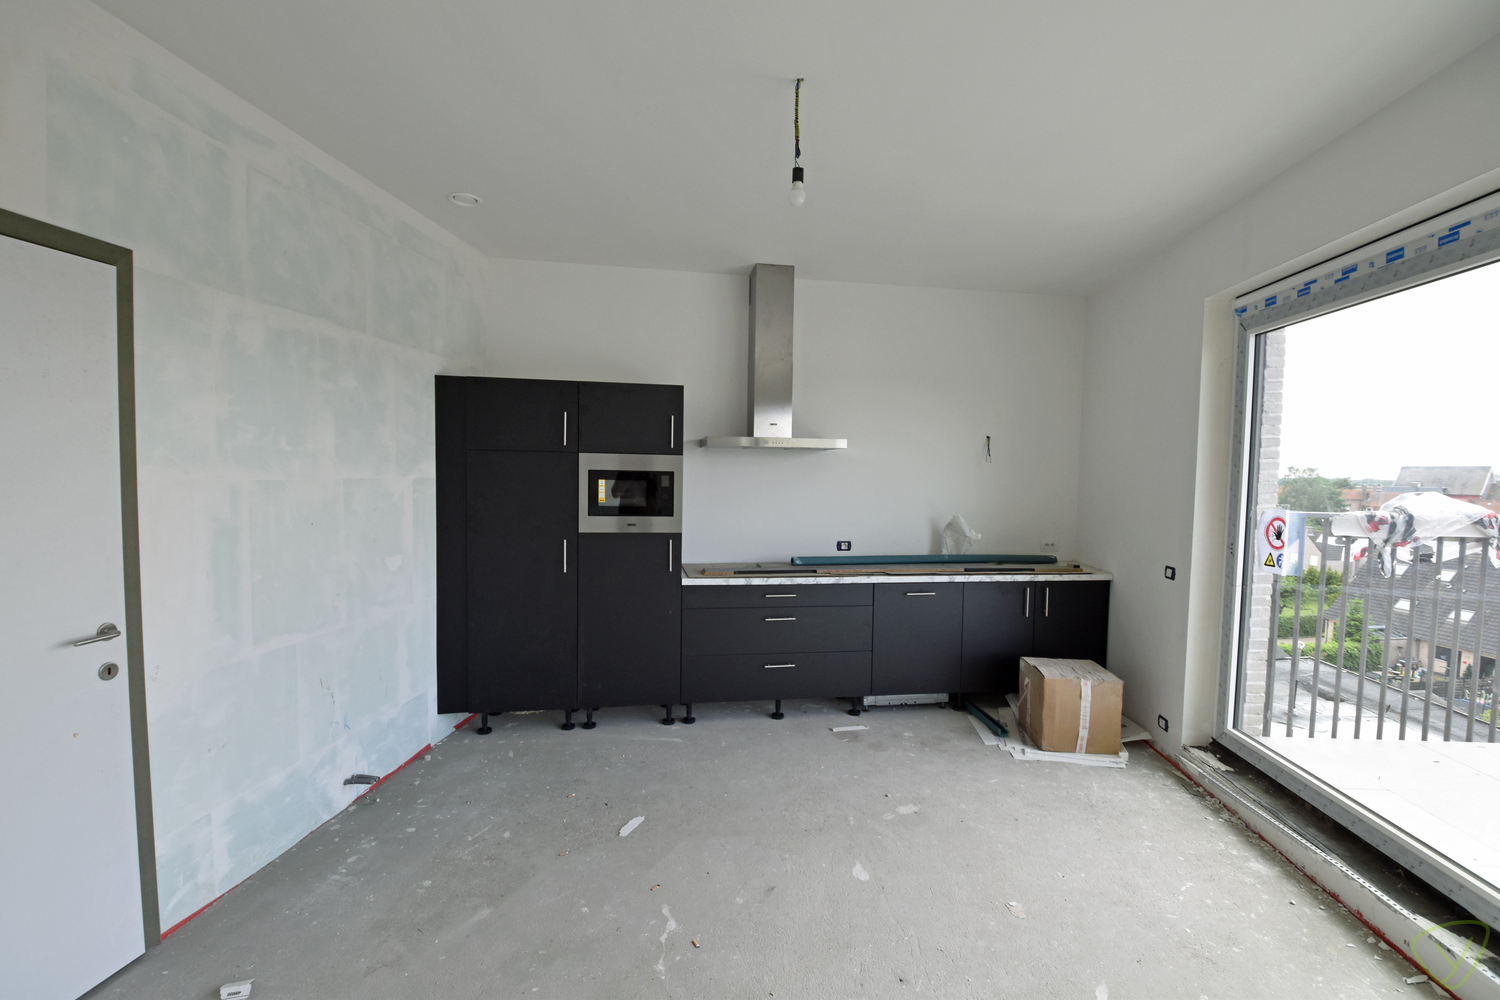 Exclusief appartement te koop in de residentie "Molenpark" gelegen op de Molenstraat foto 6